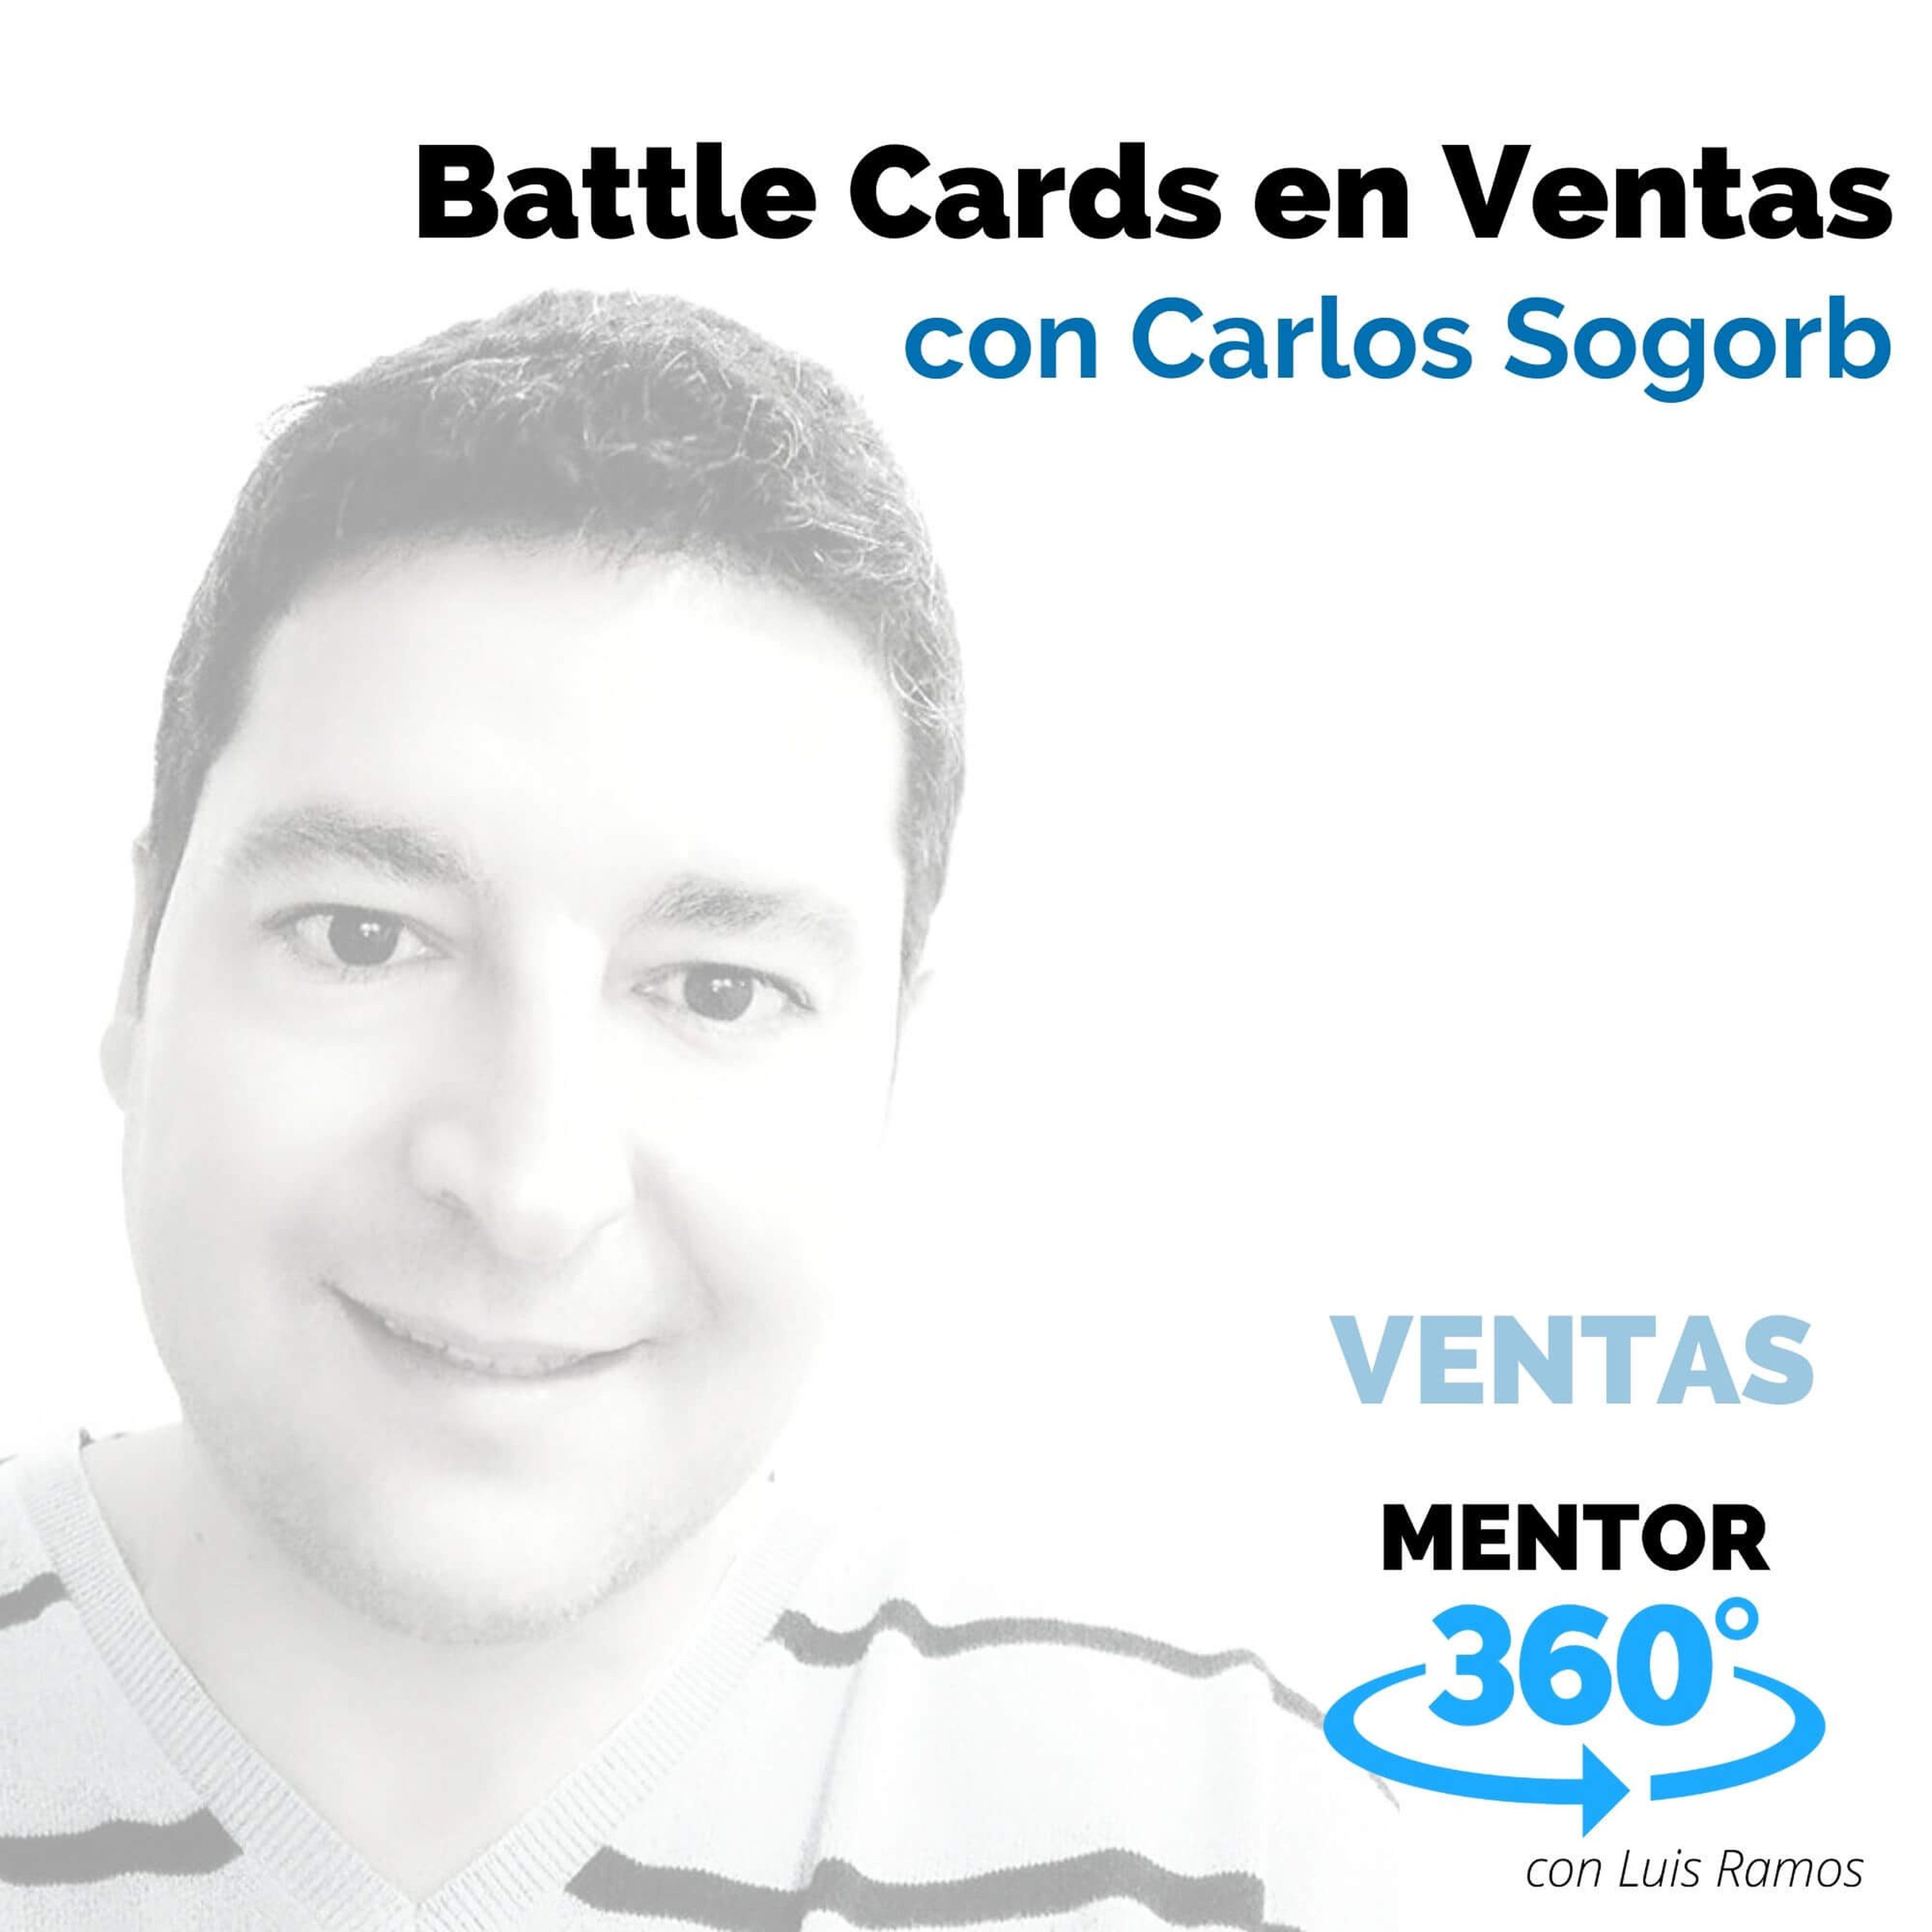 Battle Cards en Ventas, con Carlos Sogorb - VENTAS